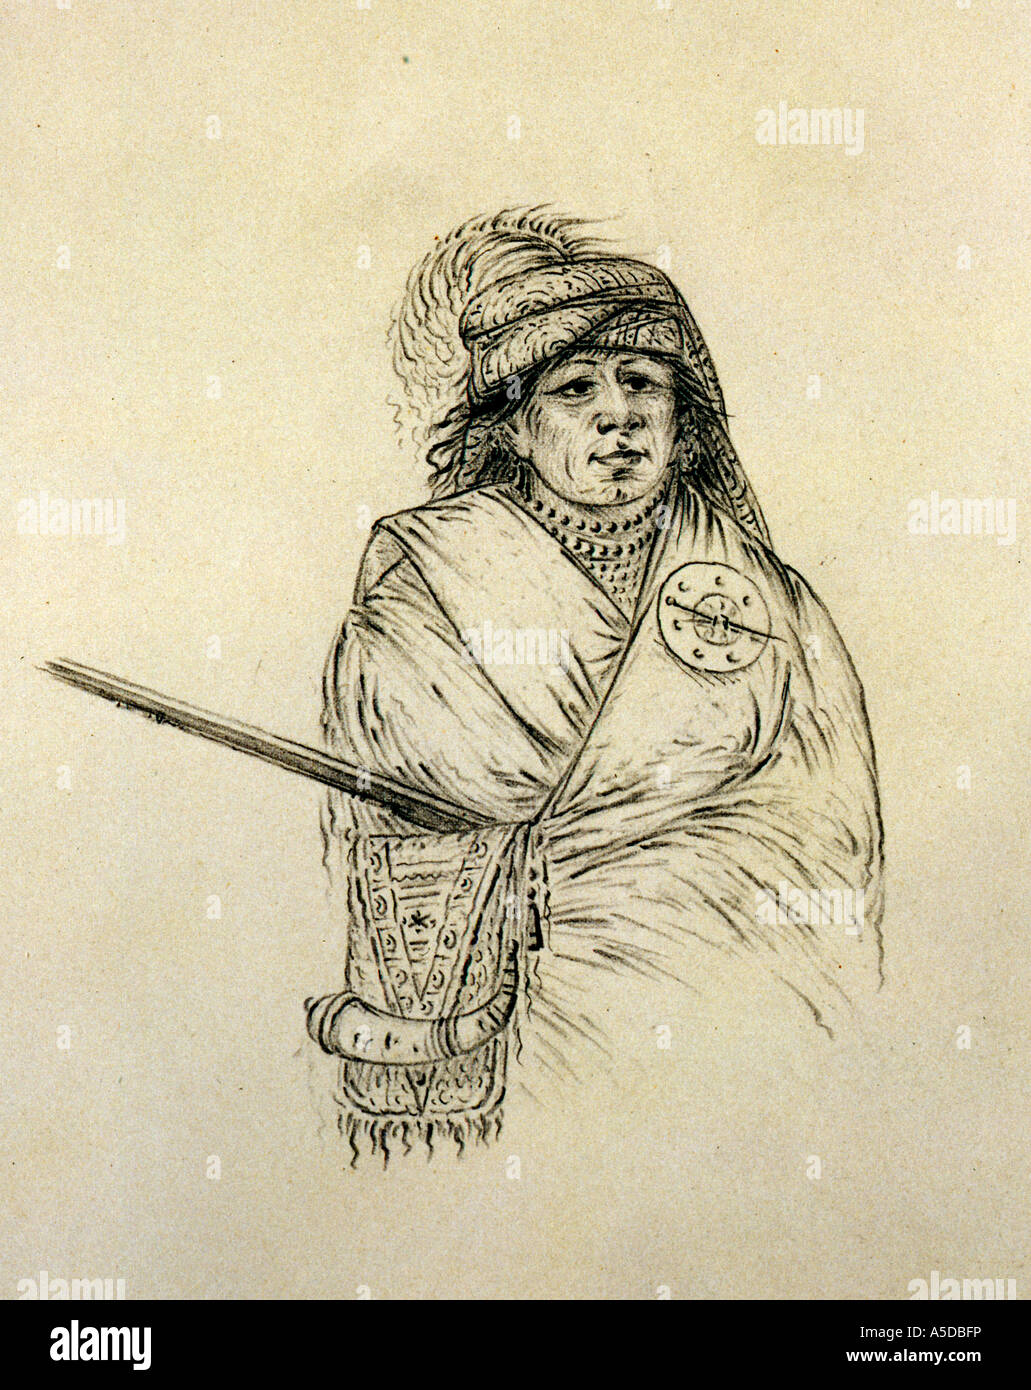 Mic E No Pa Portrait of American Seminole Indian ca 1859 Stock Photo